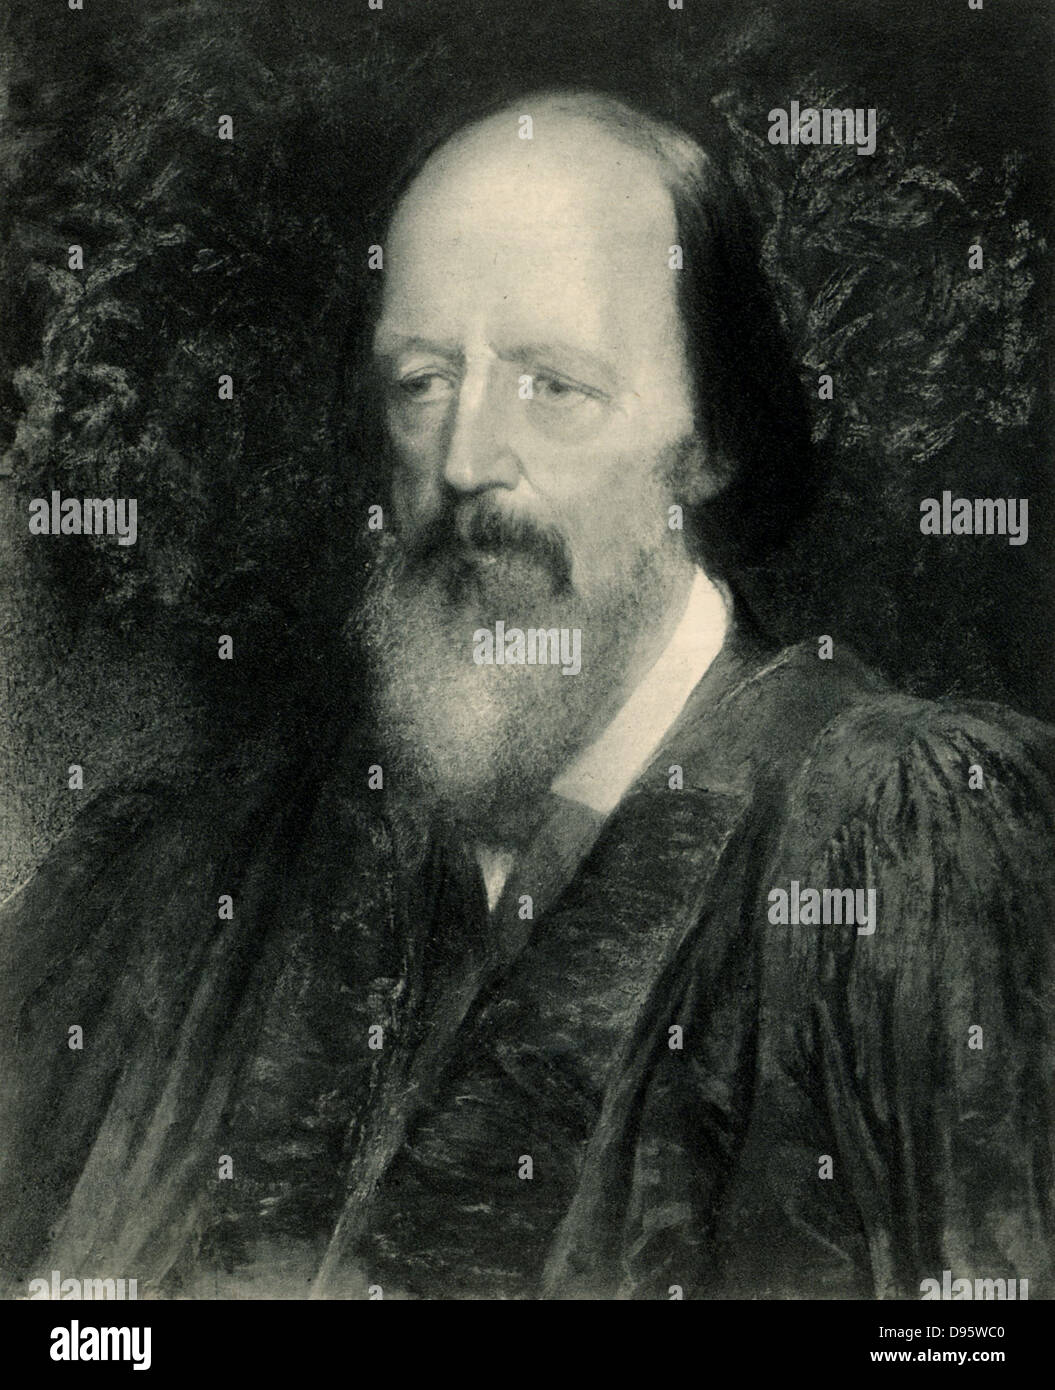 Alfred, lord Tennyson (1809-1892) poète anglais. Poète Lauréat 1850. Lithographie après le portrait de George Frederick Watts (1817-1904). Banque D'Images